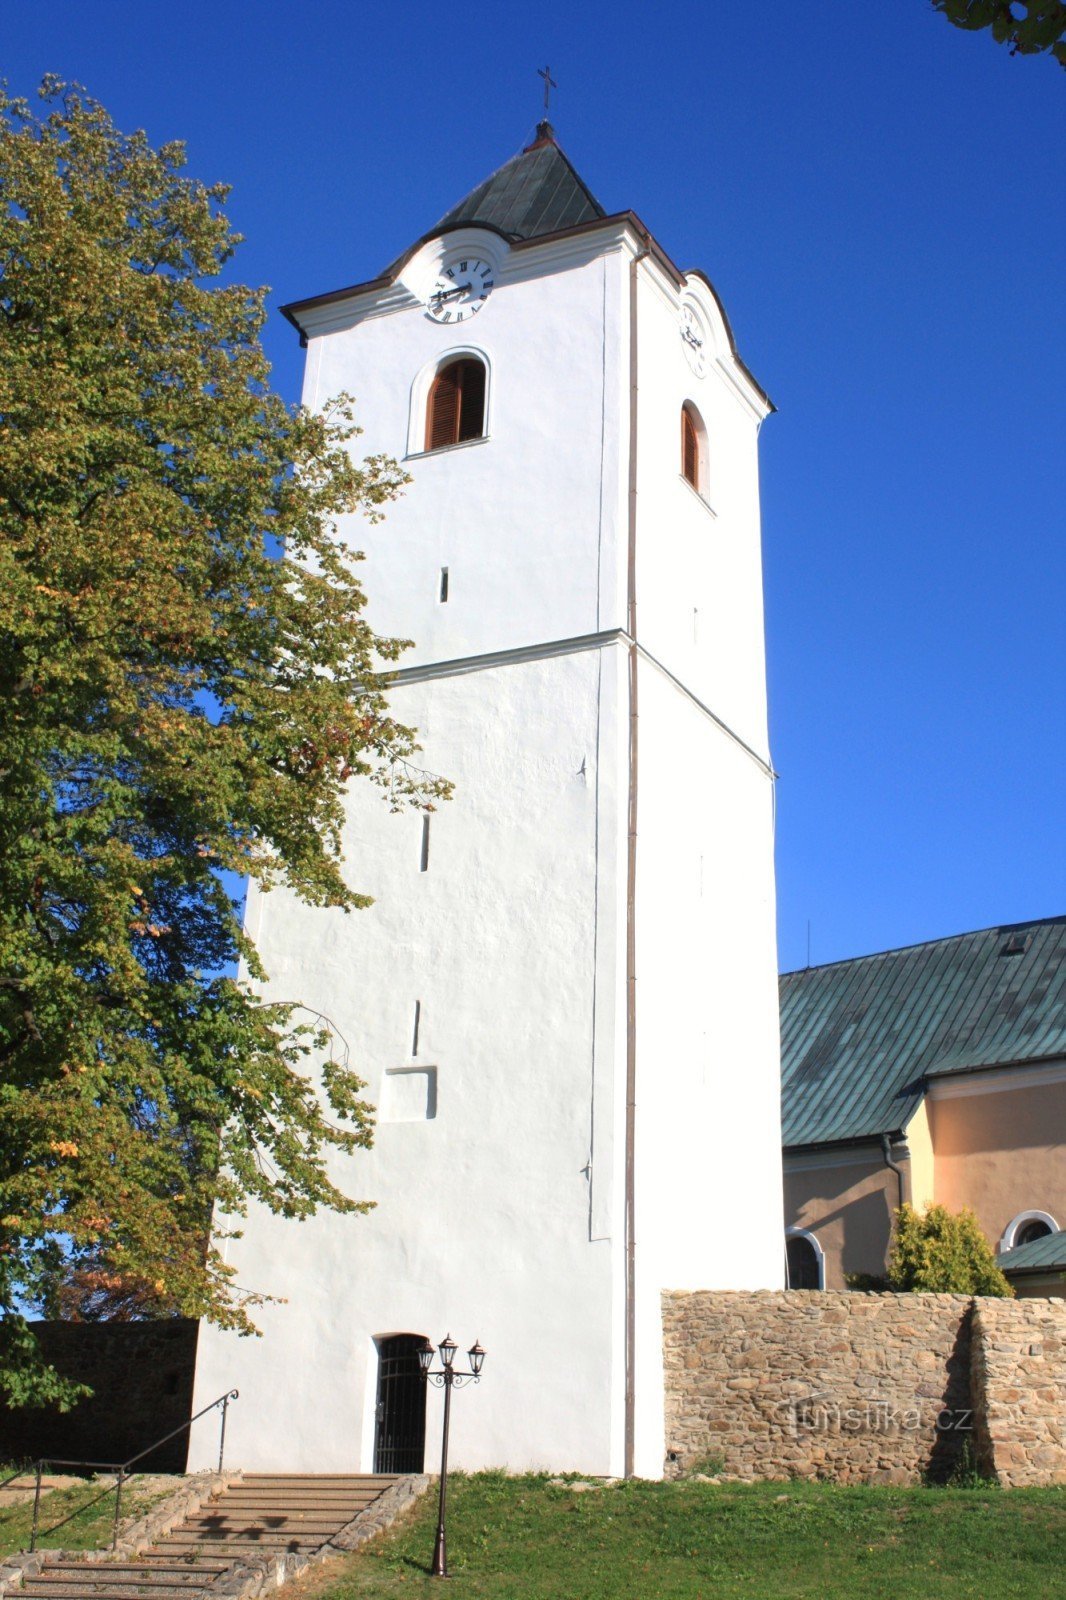 Osová Bítýška - biserica Sf. Iacov cel Mare